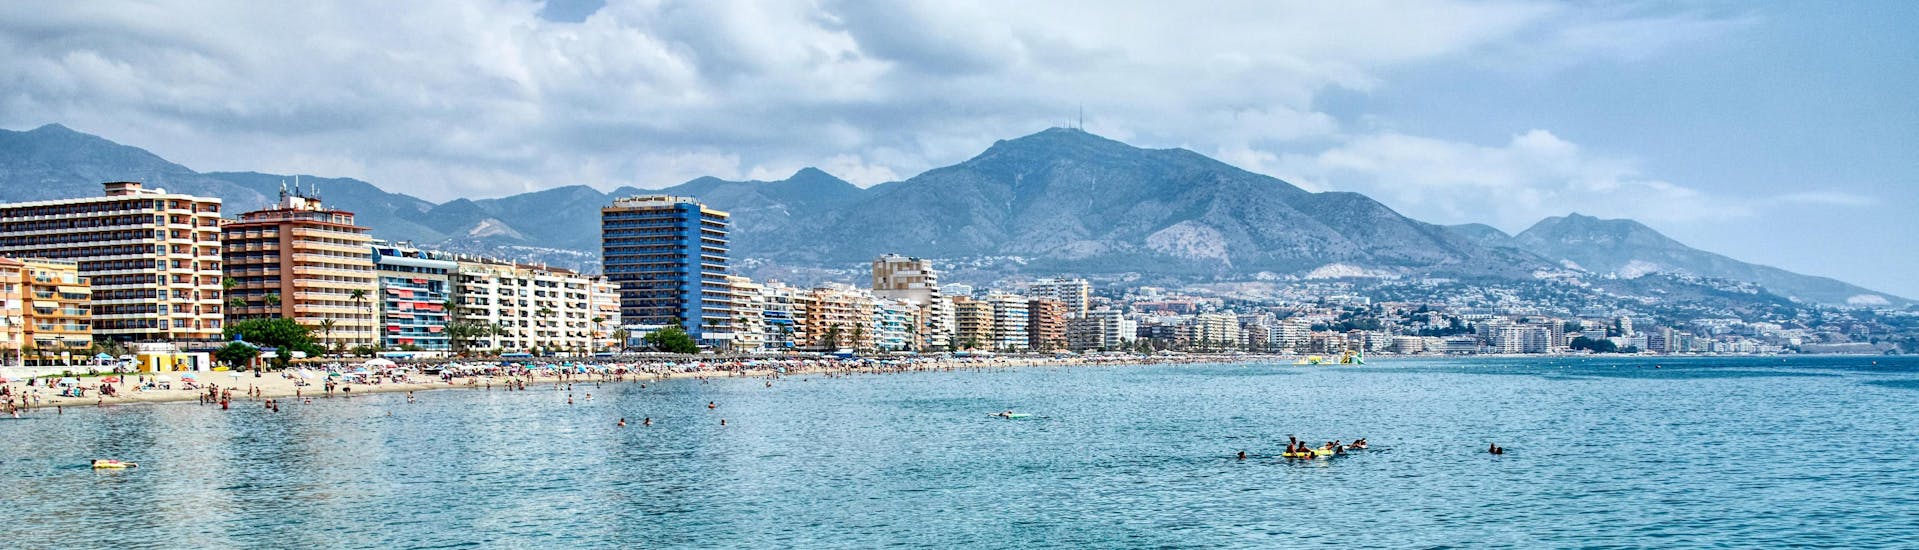 Vue du littoral de Fuengirola, Málaga, une destination de vacances populaire pour les sports nautiques et les excursions en bateau.